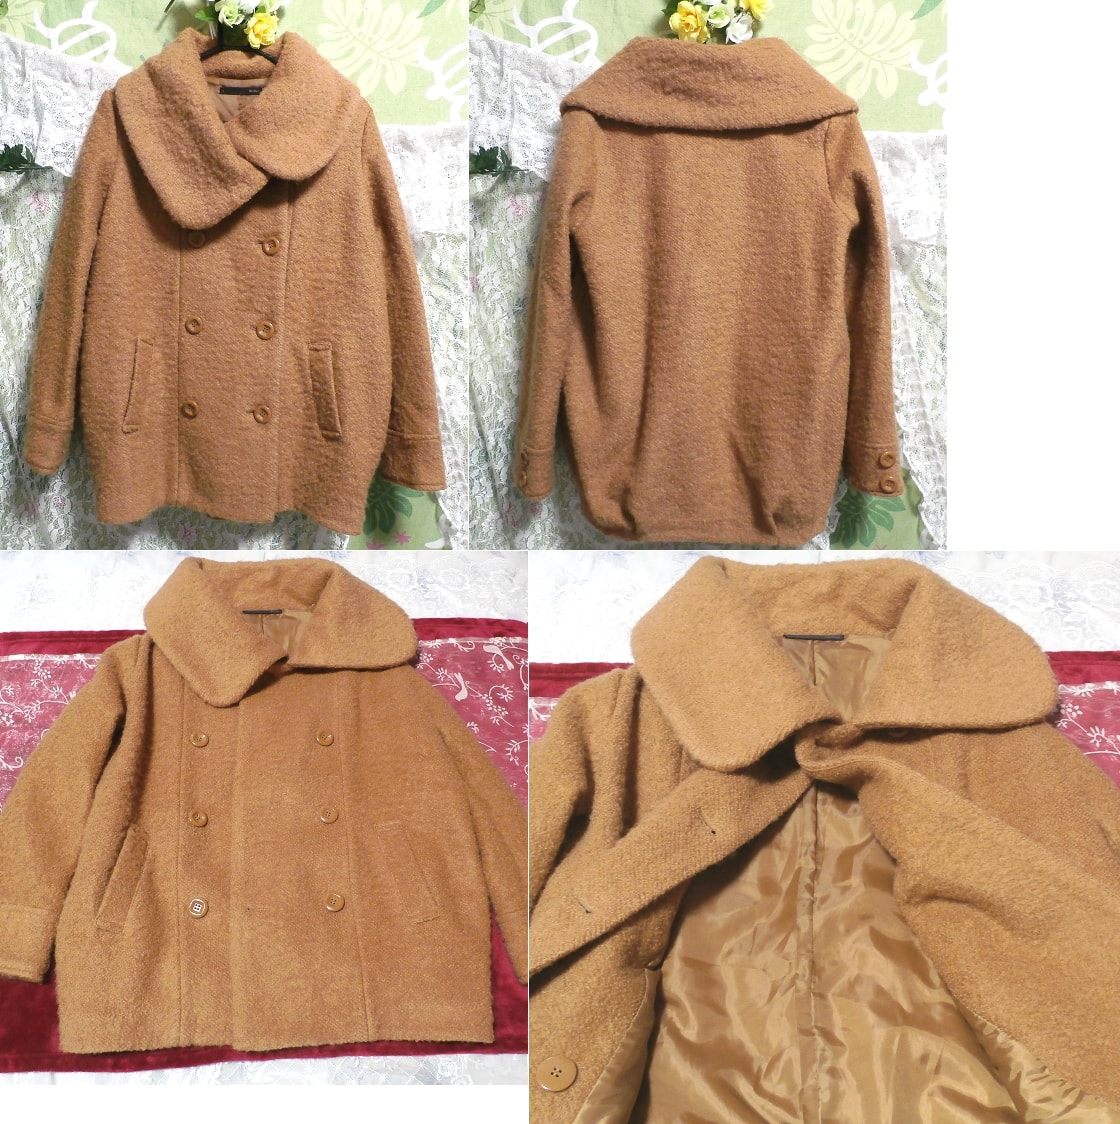 Brauner, mädchenhaft warmer, flauschiger Mantel, Mantel, Mantel im Allgemeinen, Größe m